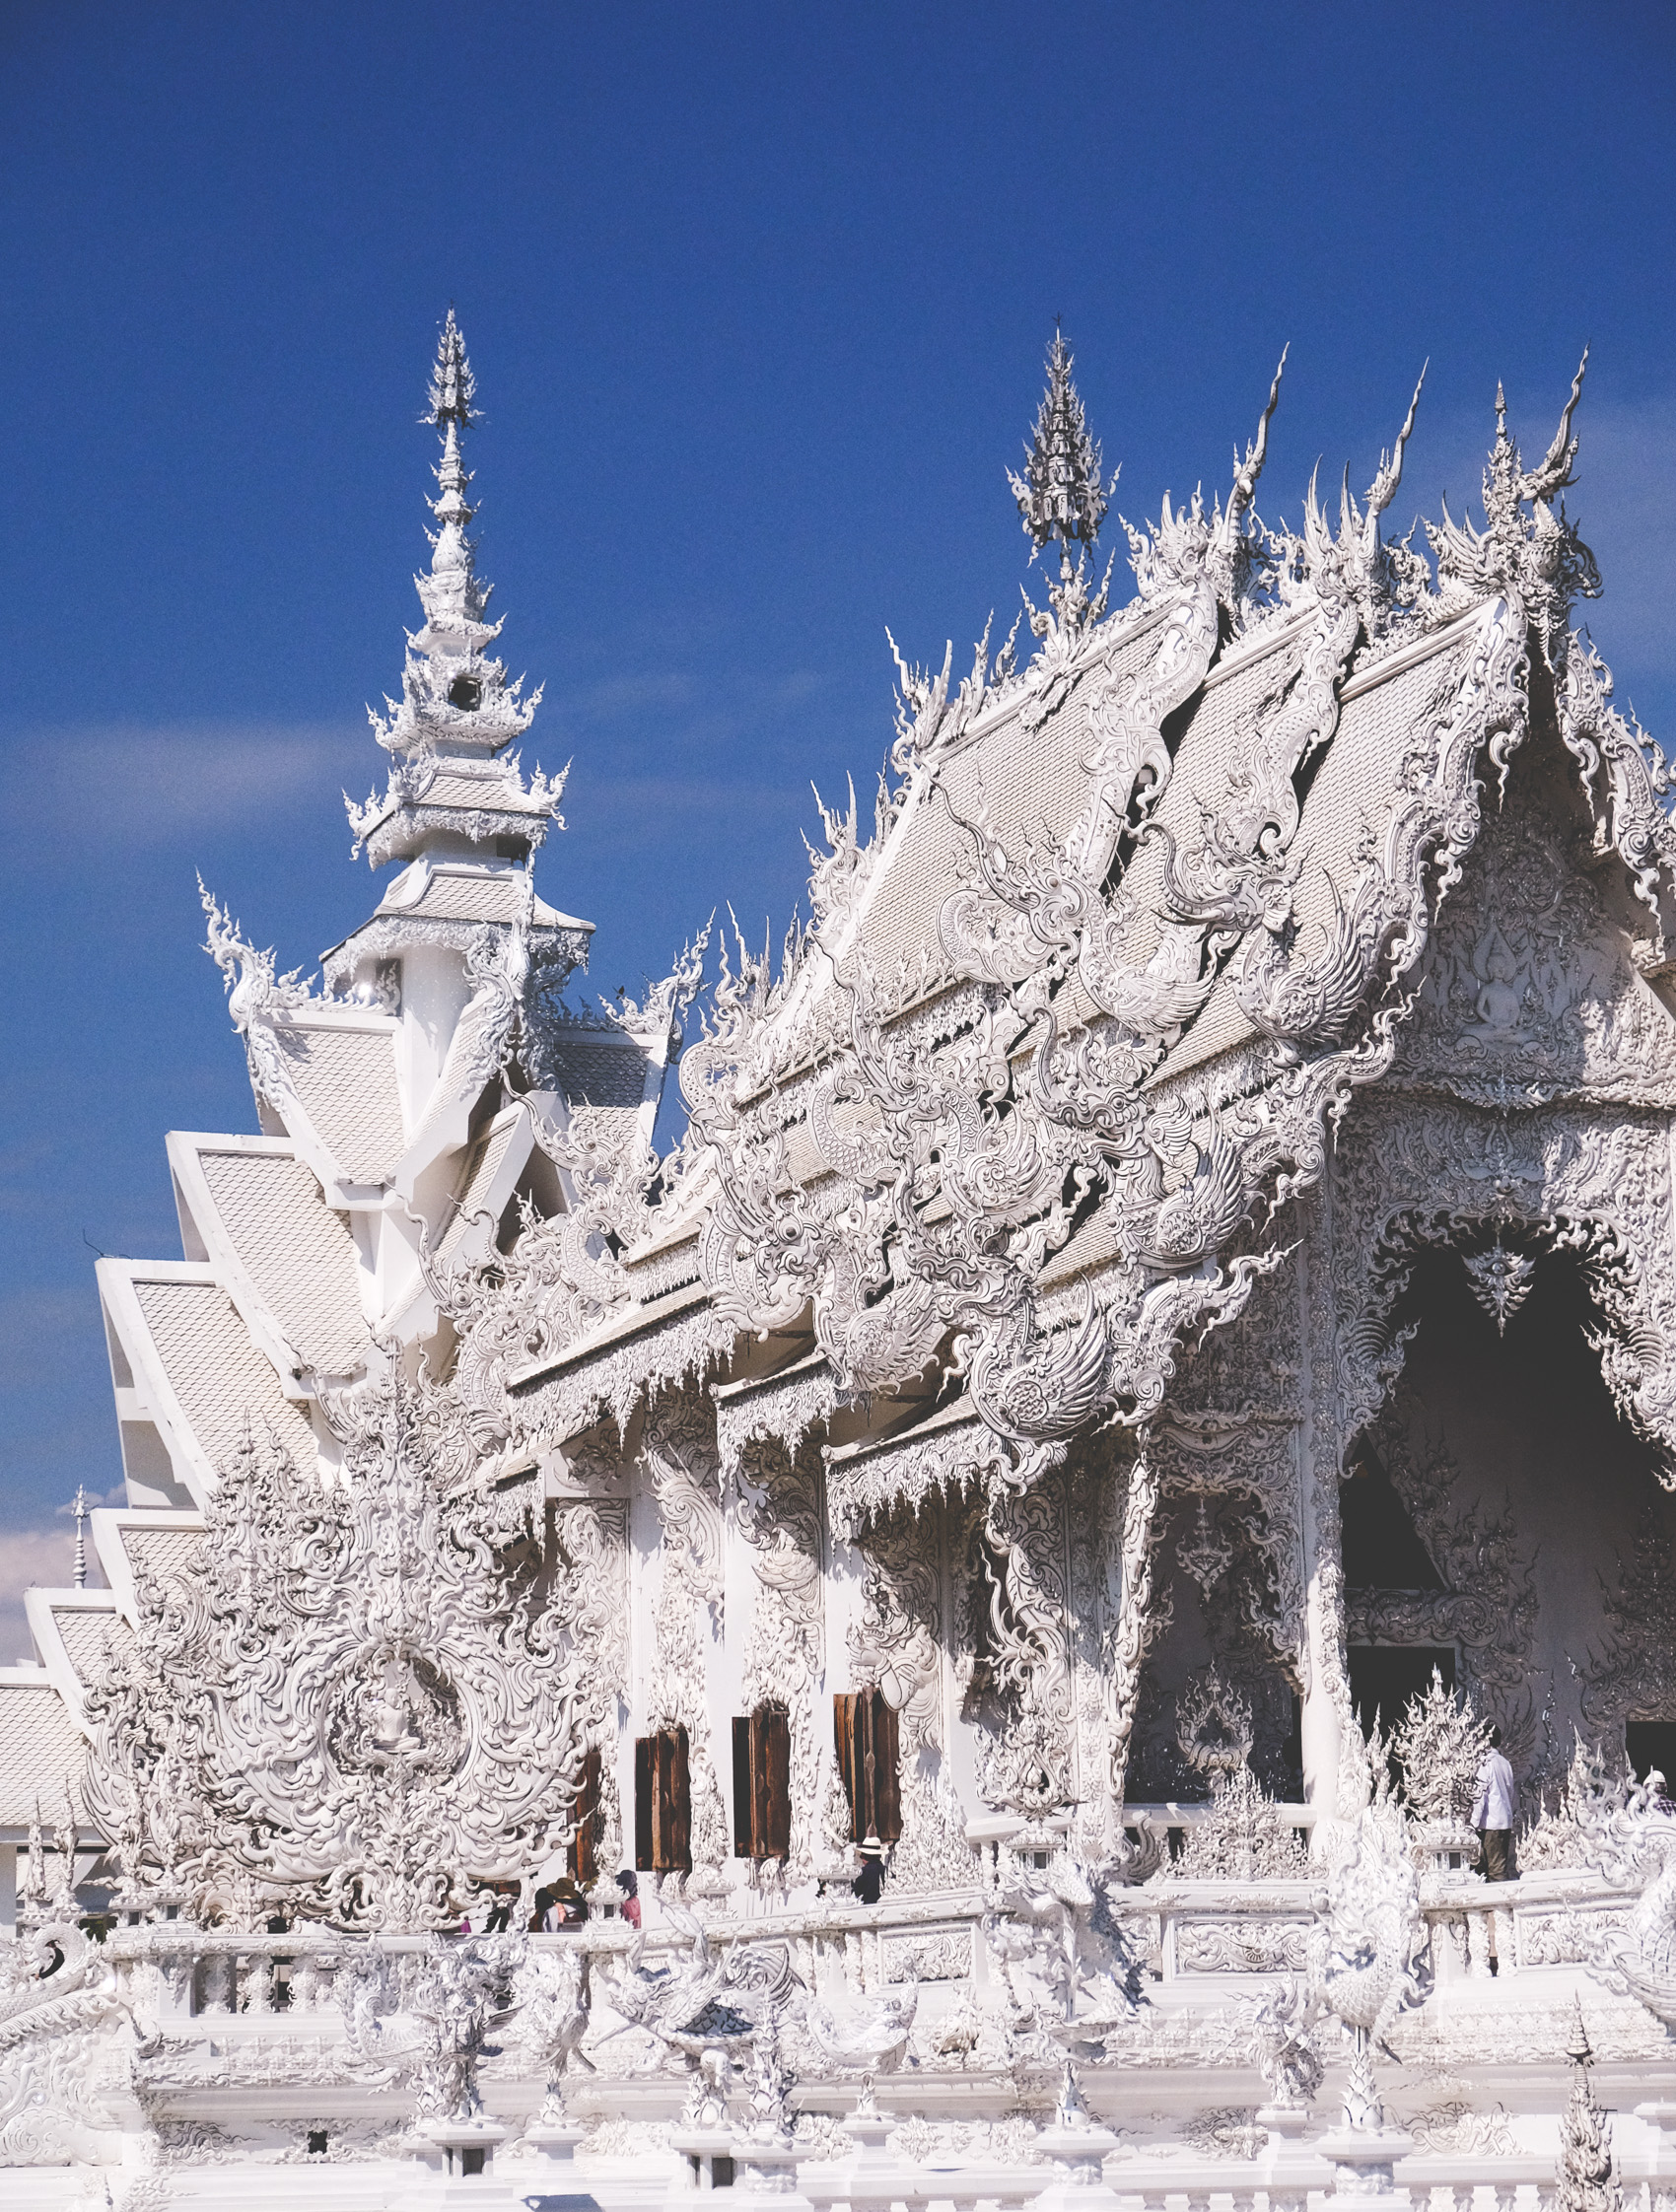 white temple